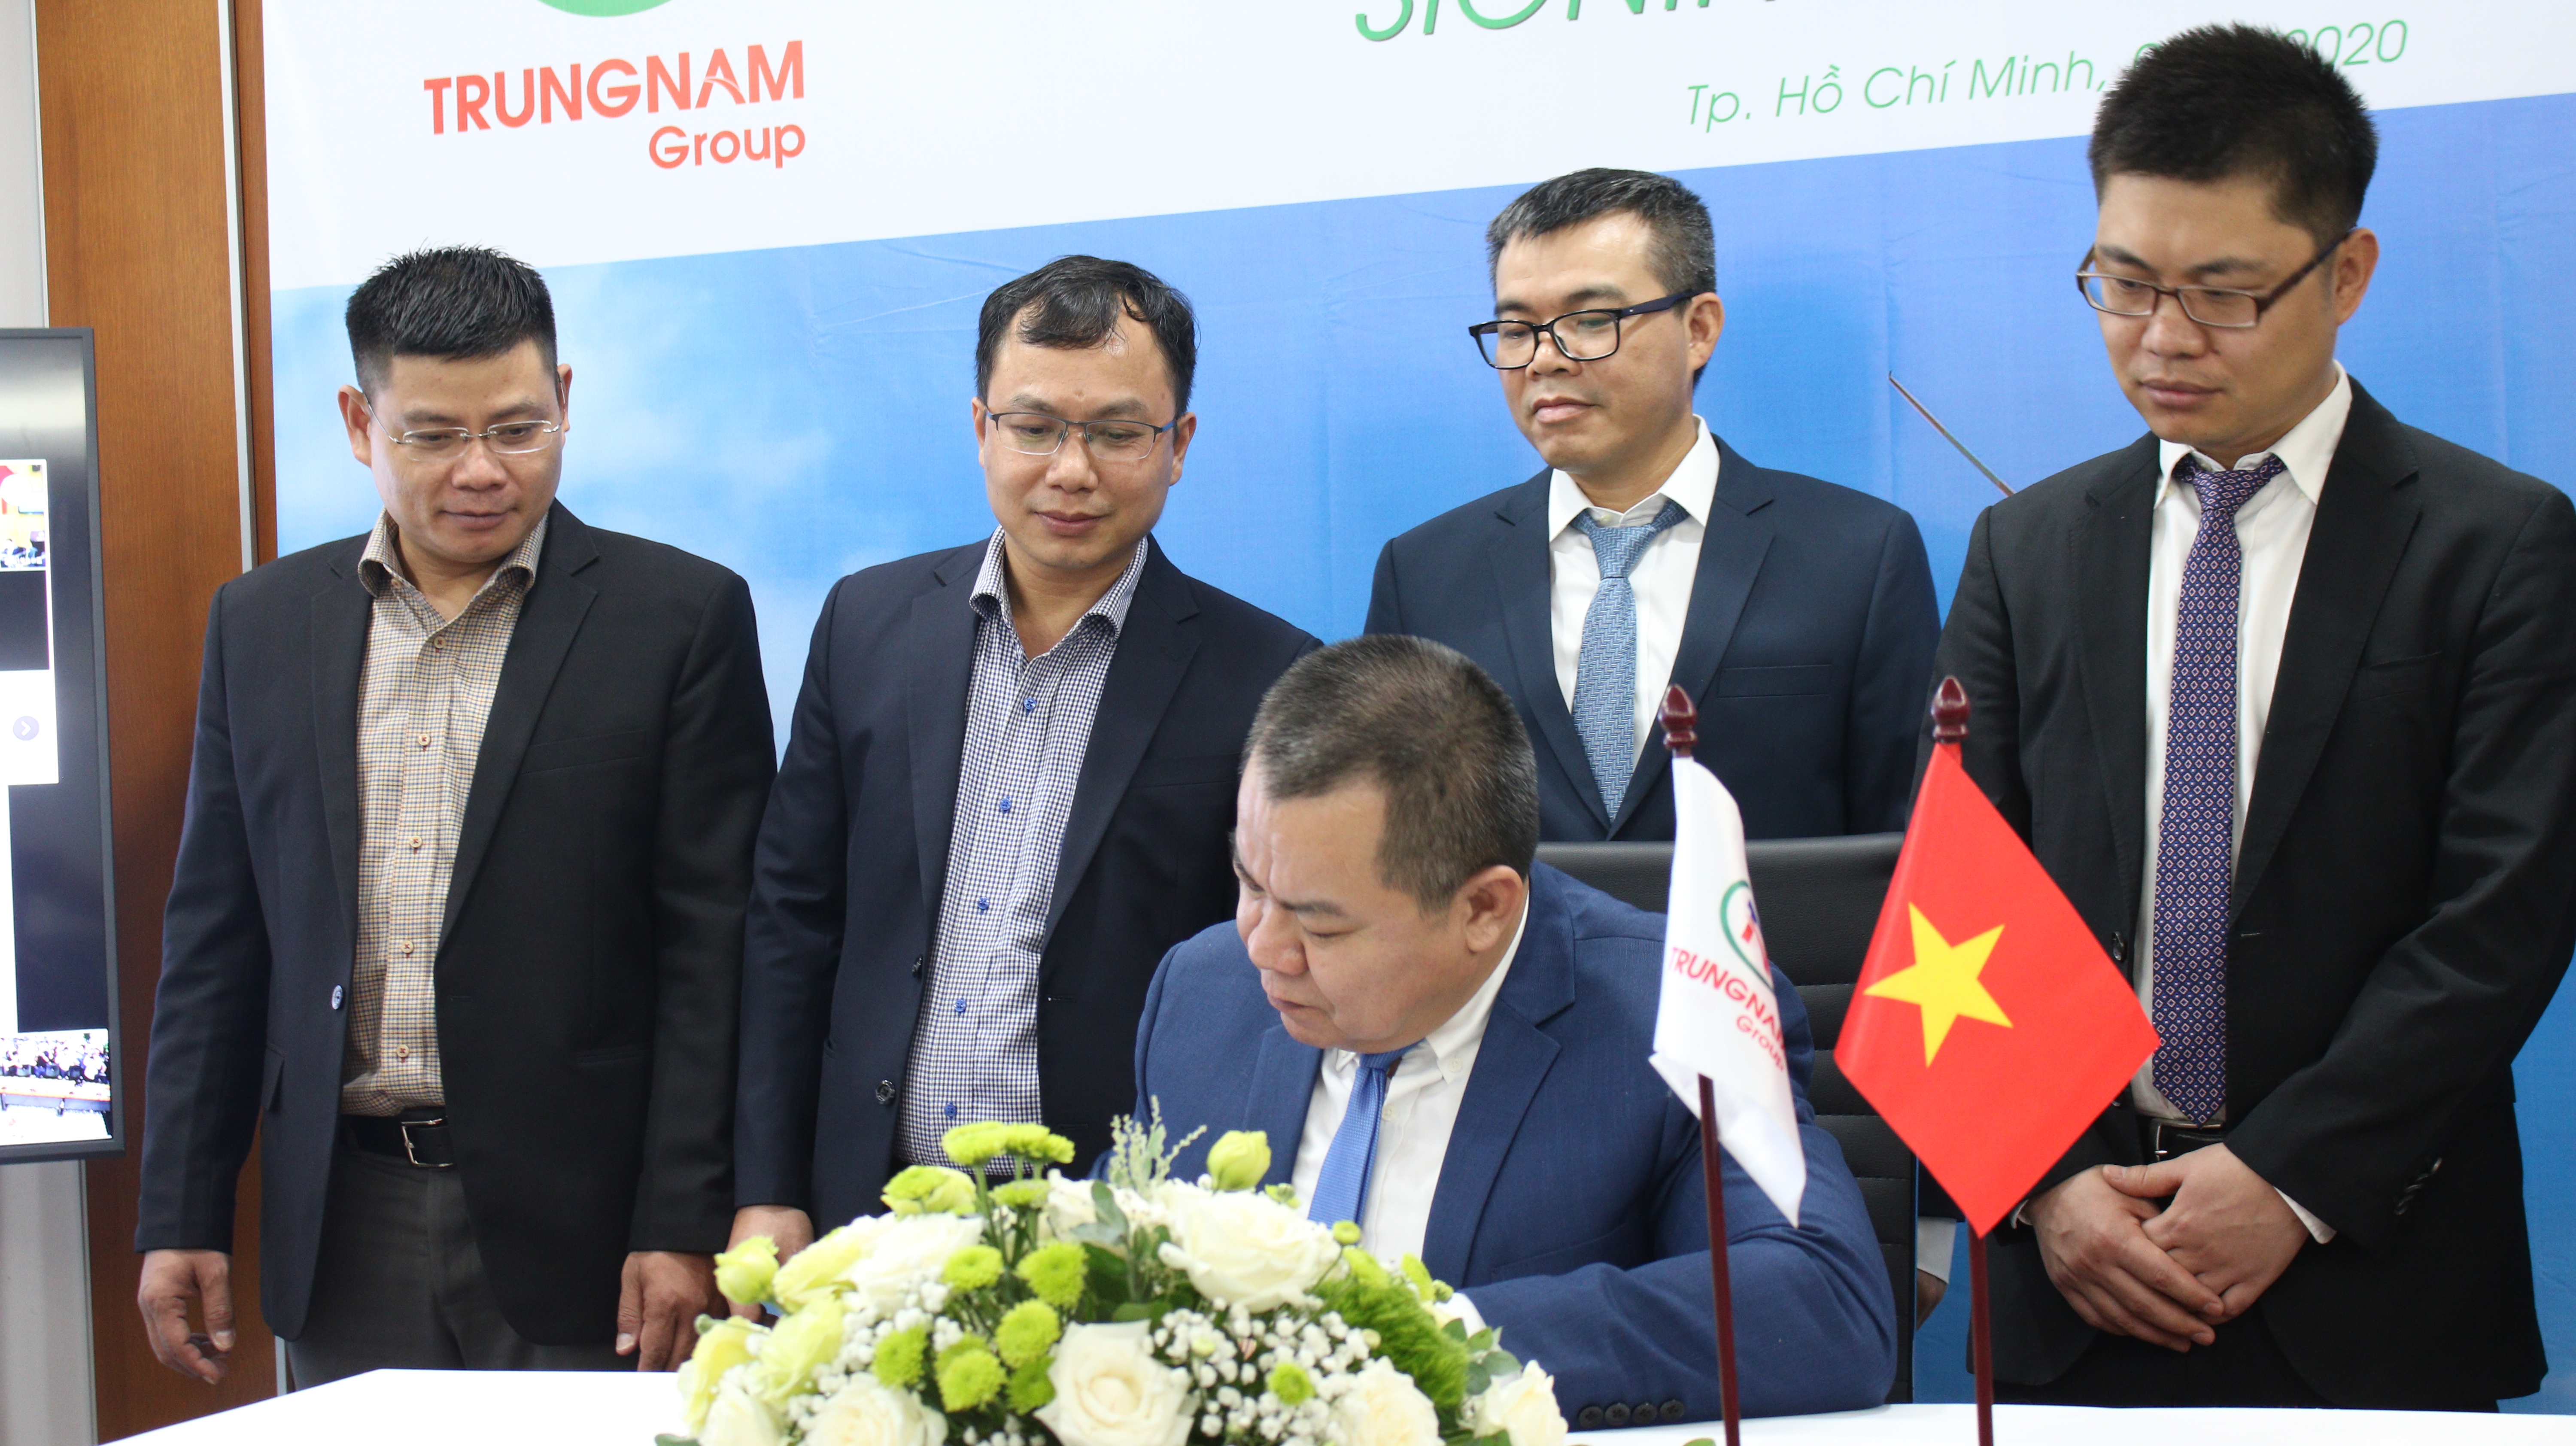 Đà Nẵng muốn gỡ vướng cho dự án của Trung Nam Group